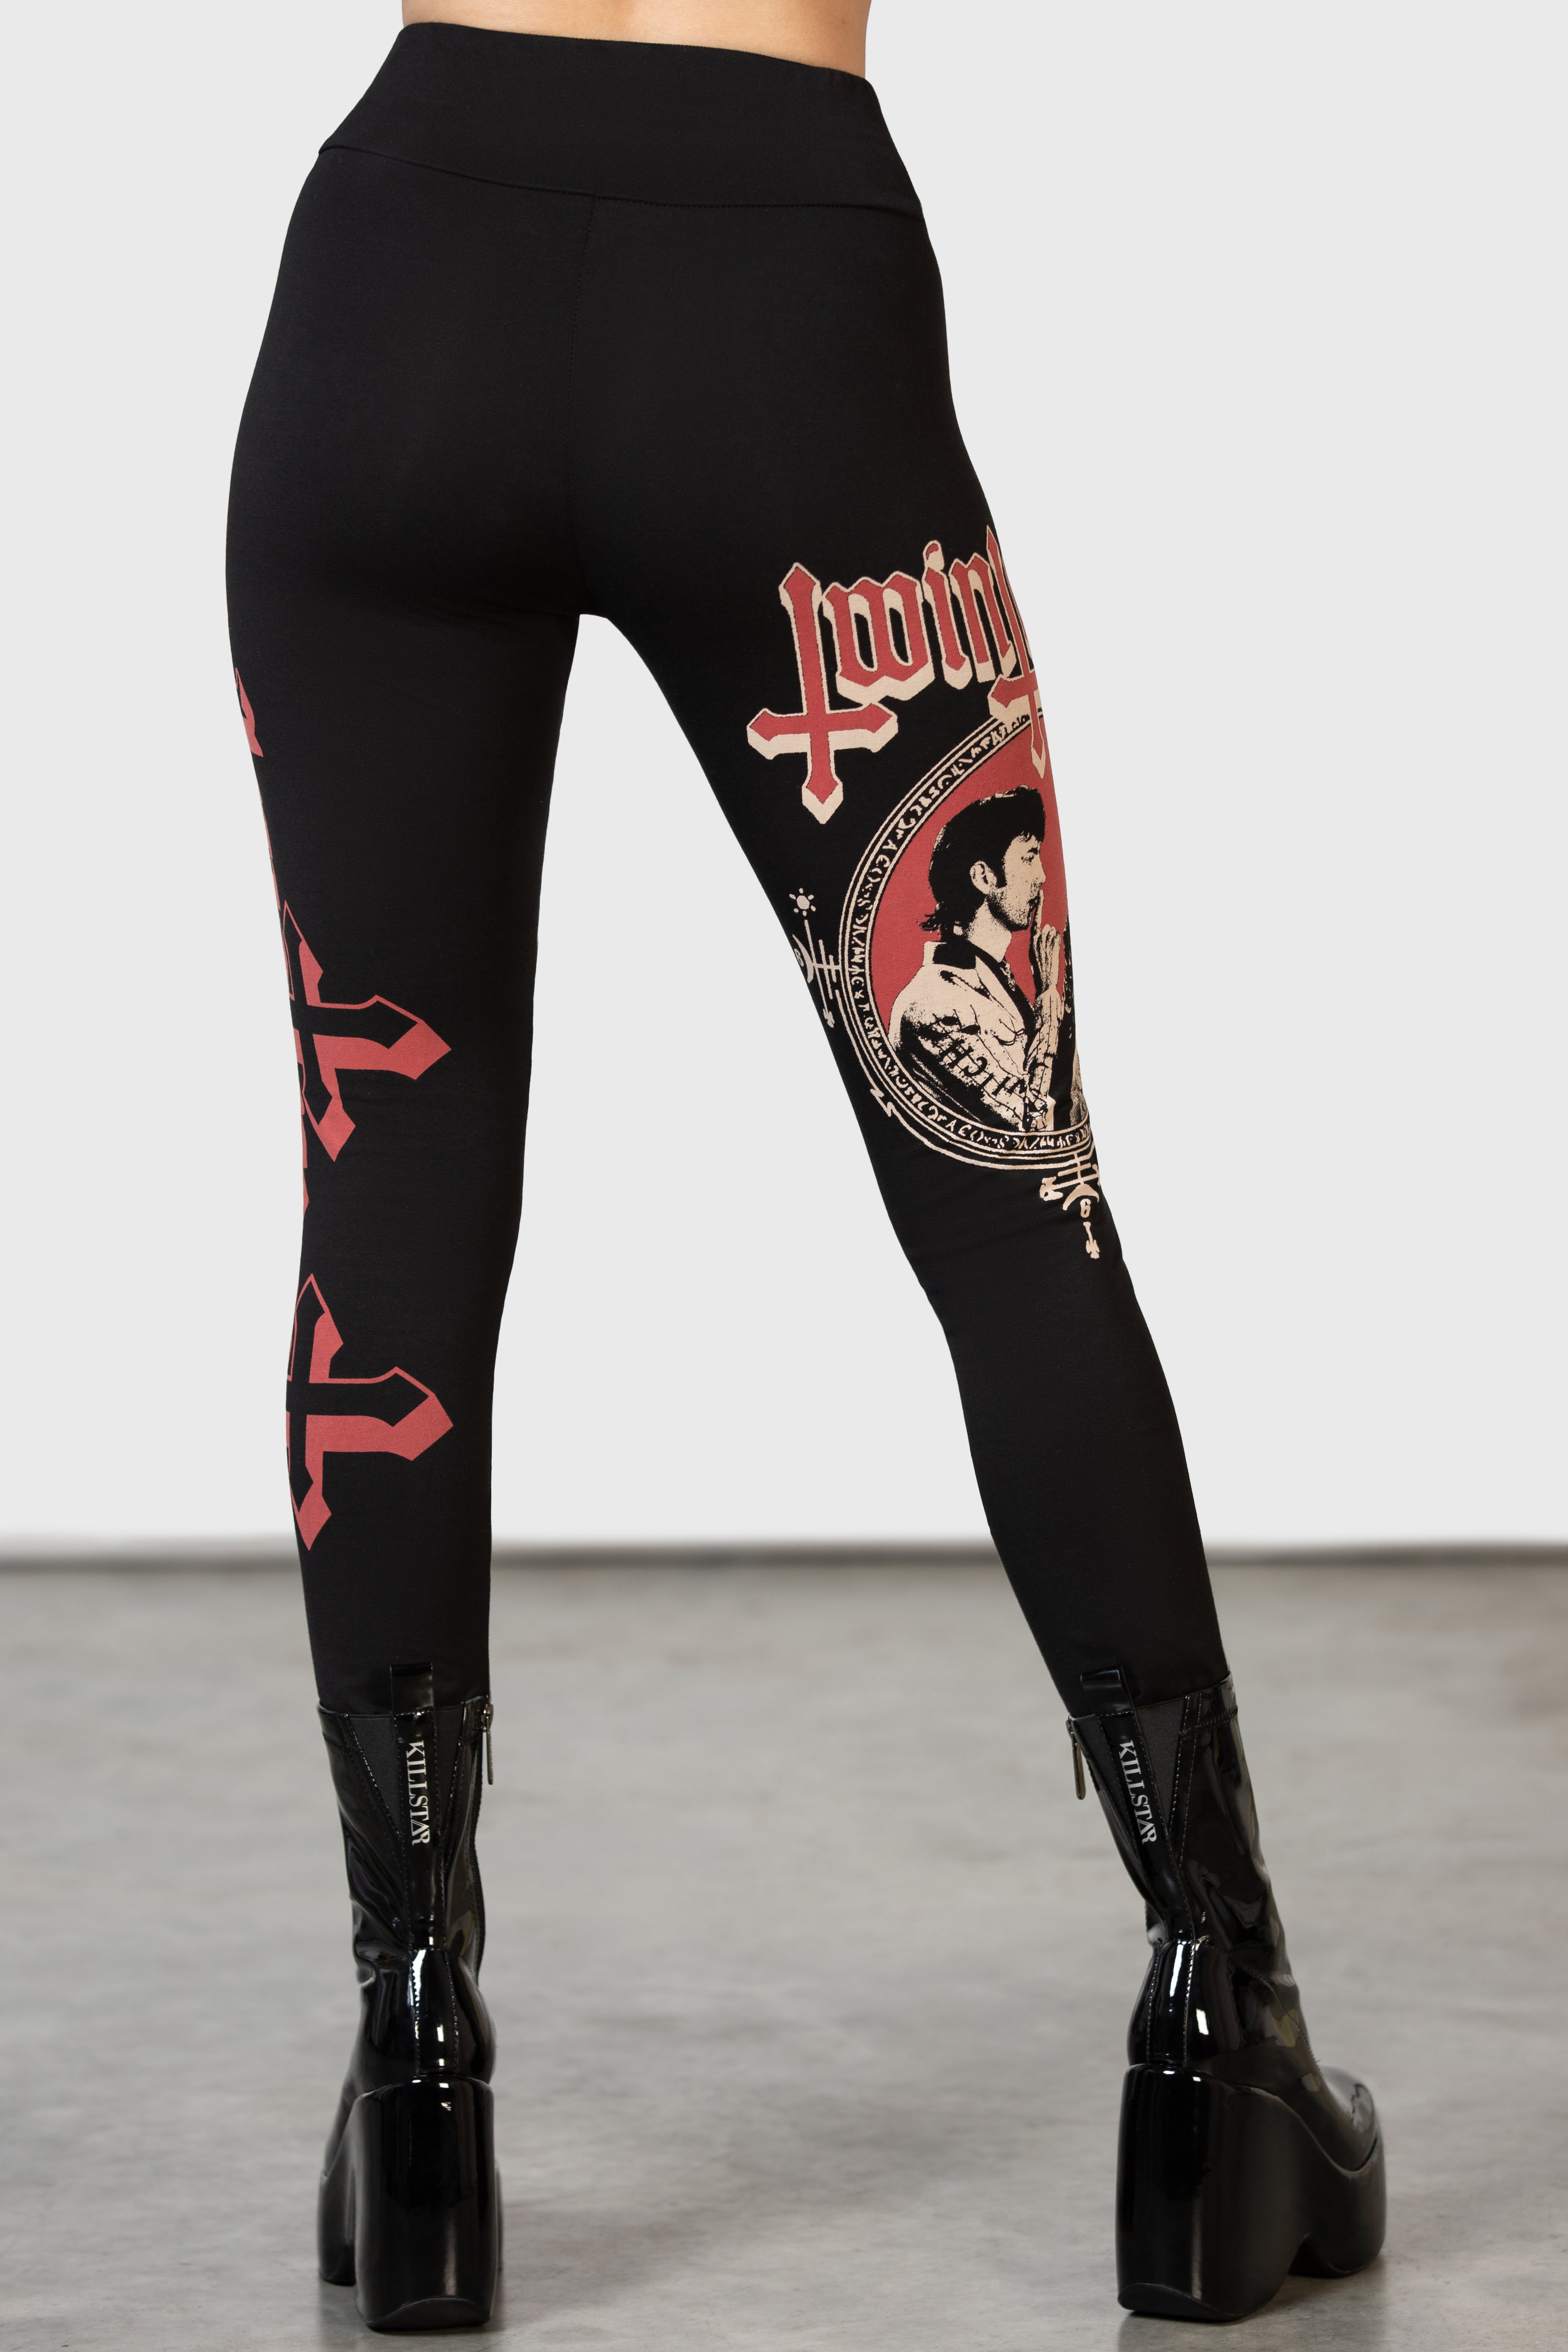 Women's pants (leggings) KILLSTAR - To Ashes Velvet - KSRA005219 